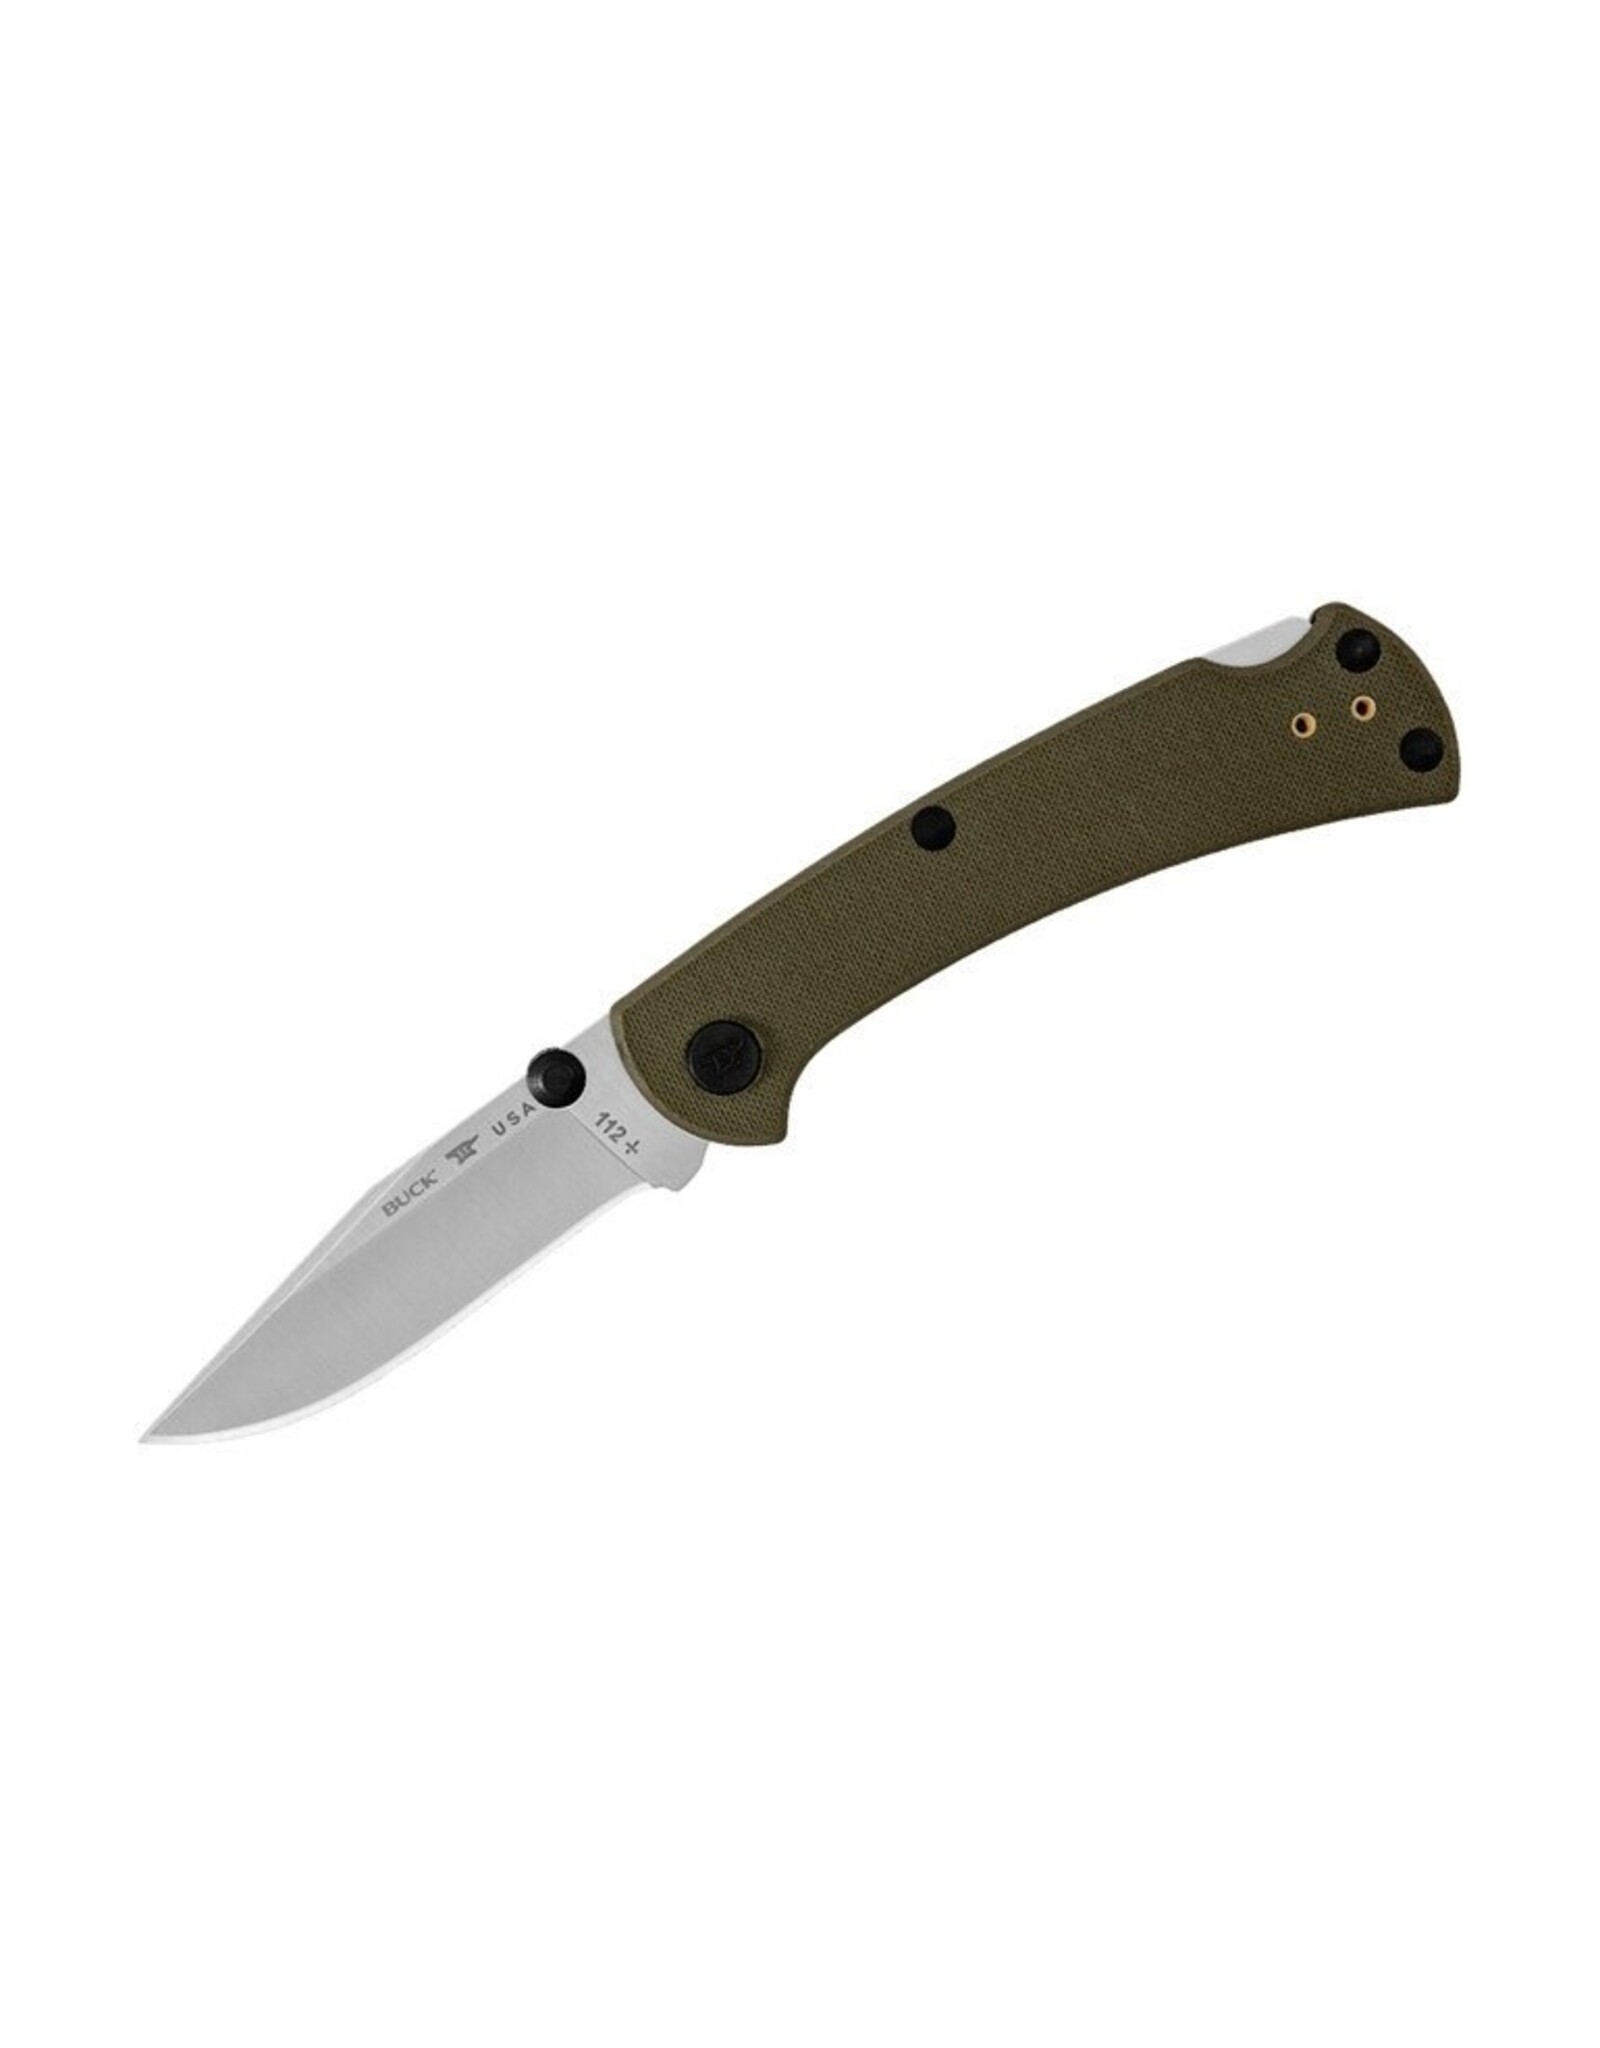 Buck Knives Buck Slim Pro TRX Folding Knife, S30V Satin, G10 Green, 0112GRS3